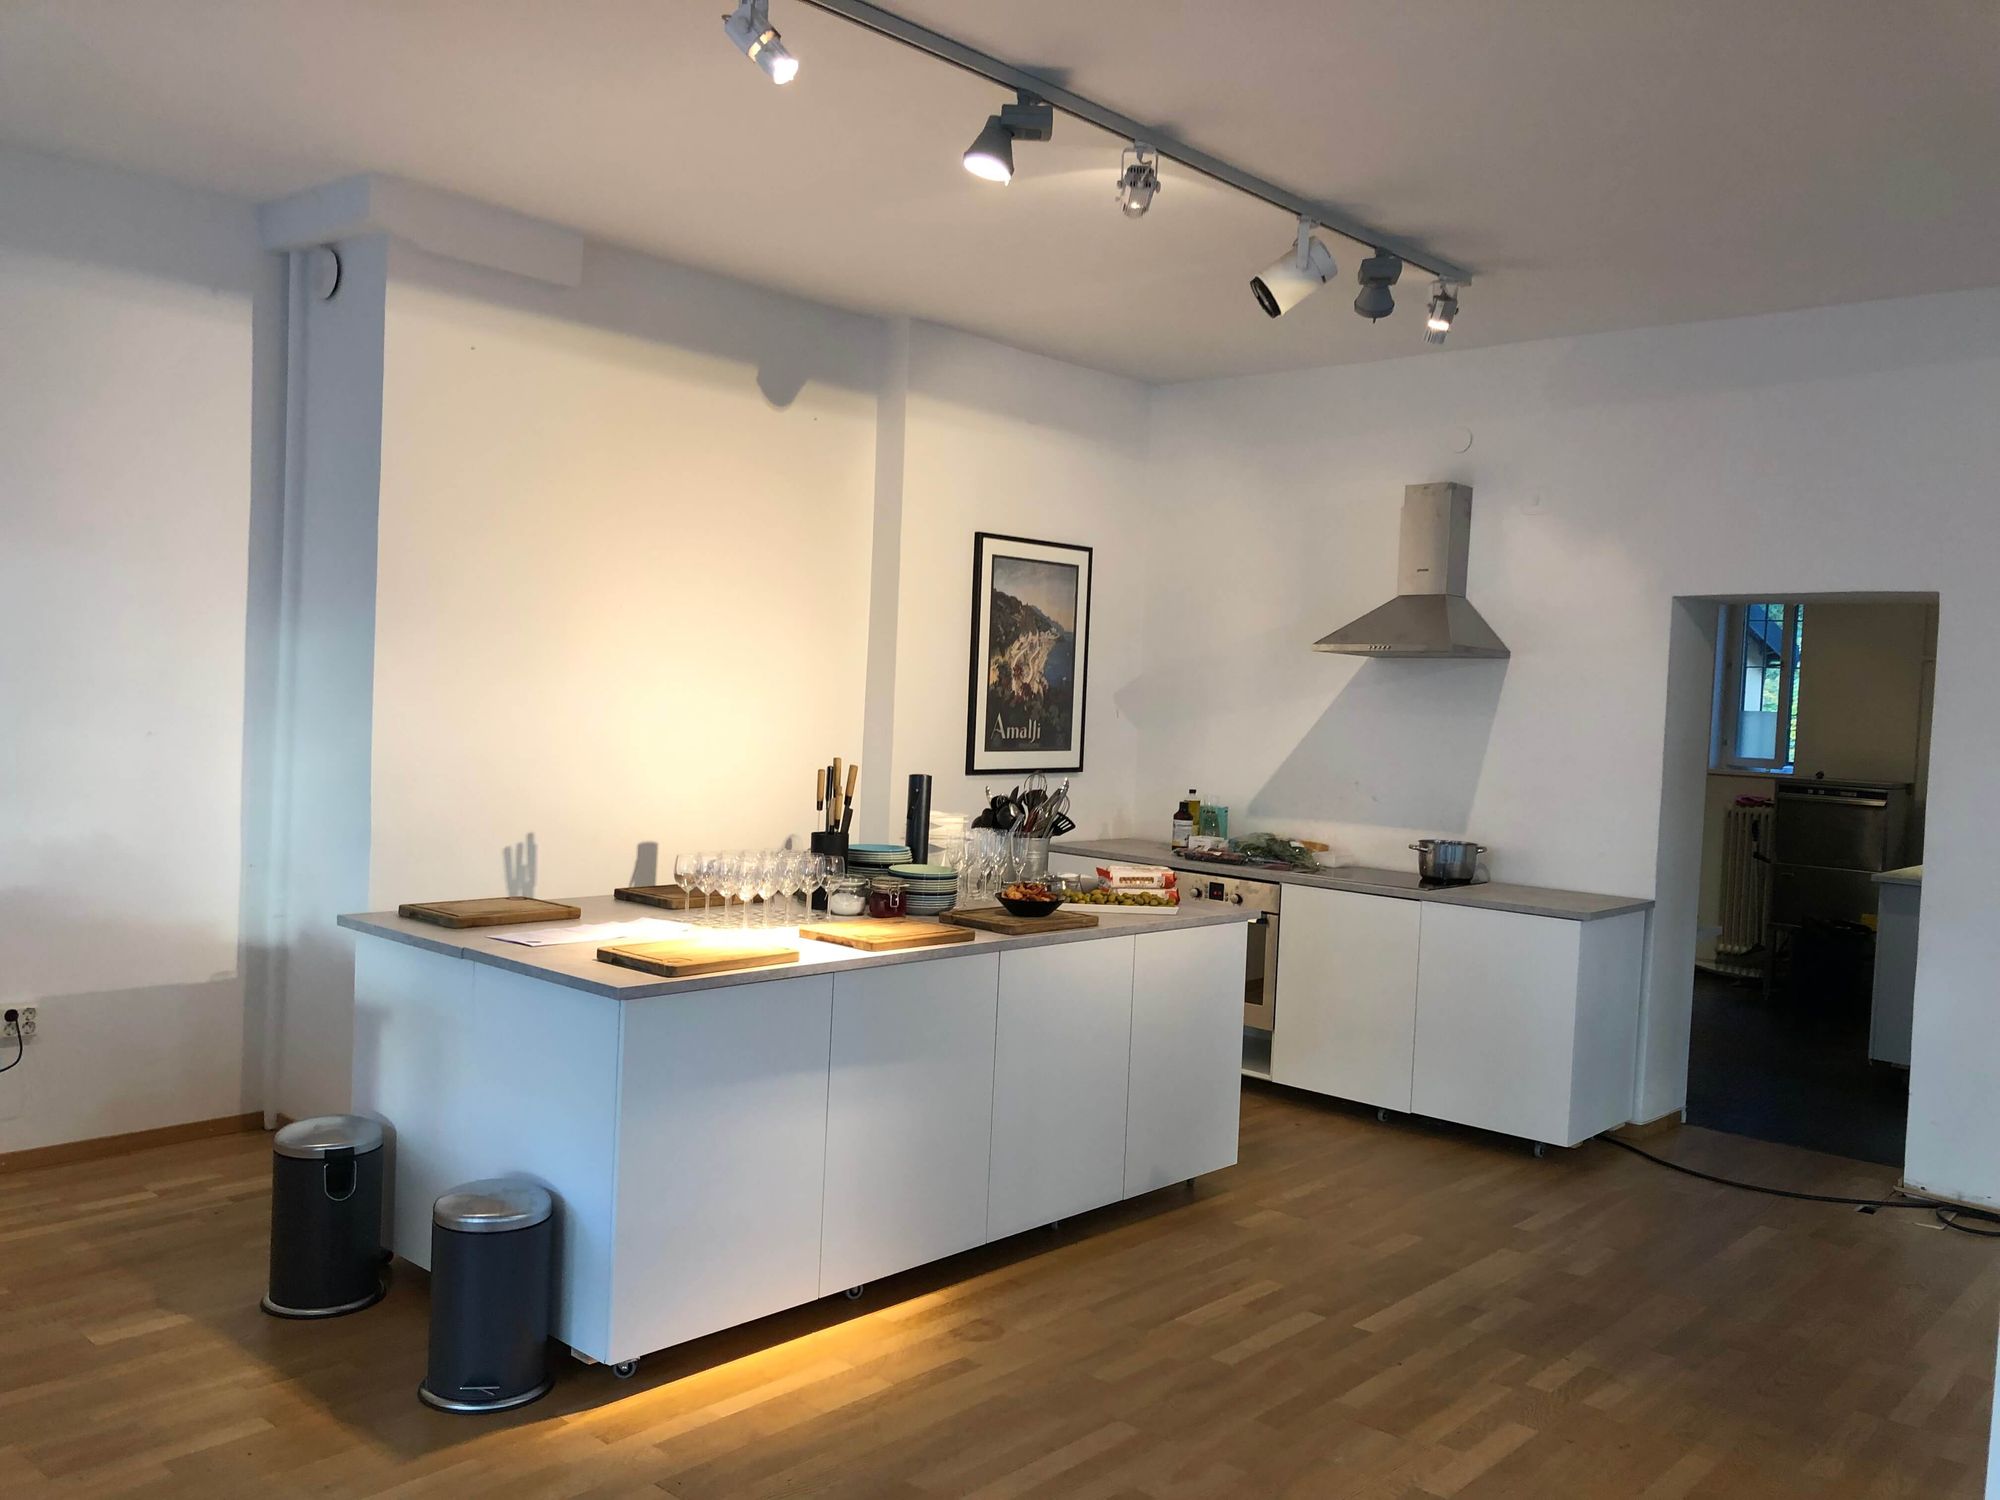 Ekhagens Köksstudio är en festlokal i Stockholm dit du kan ta med egen dryck